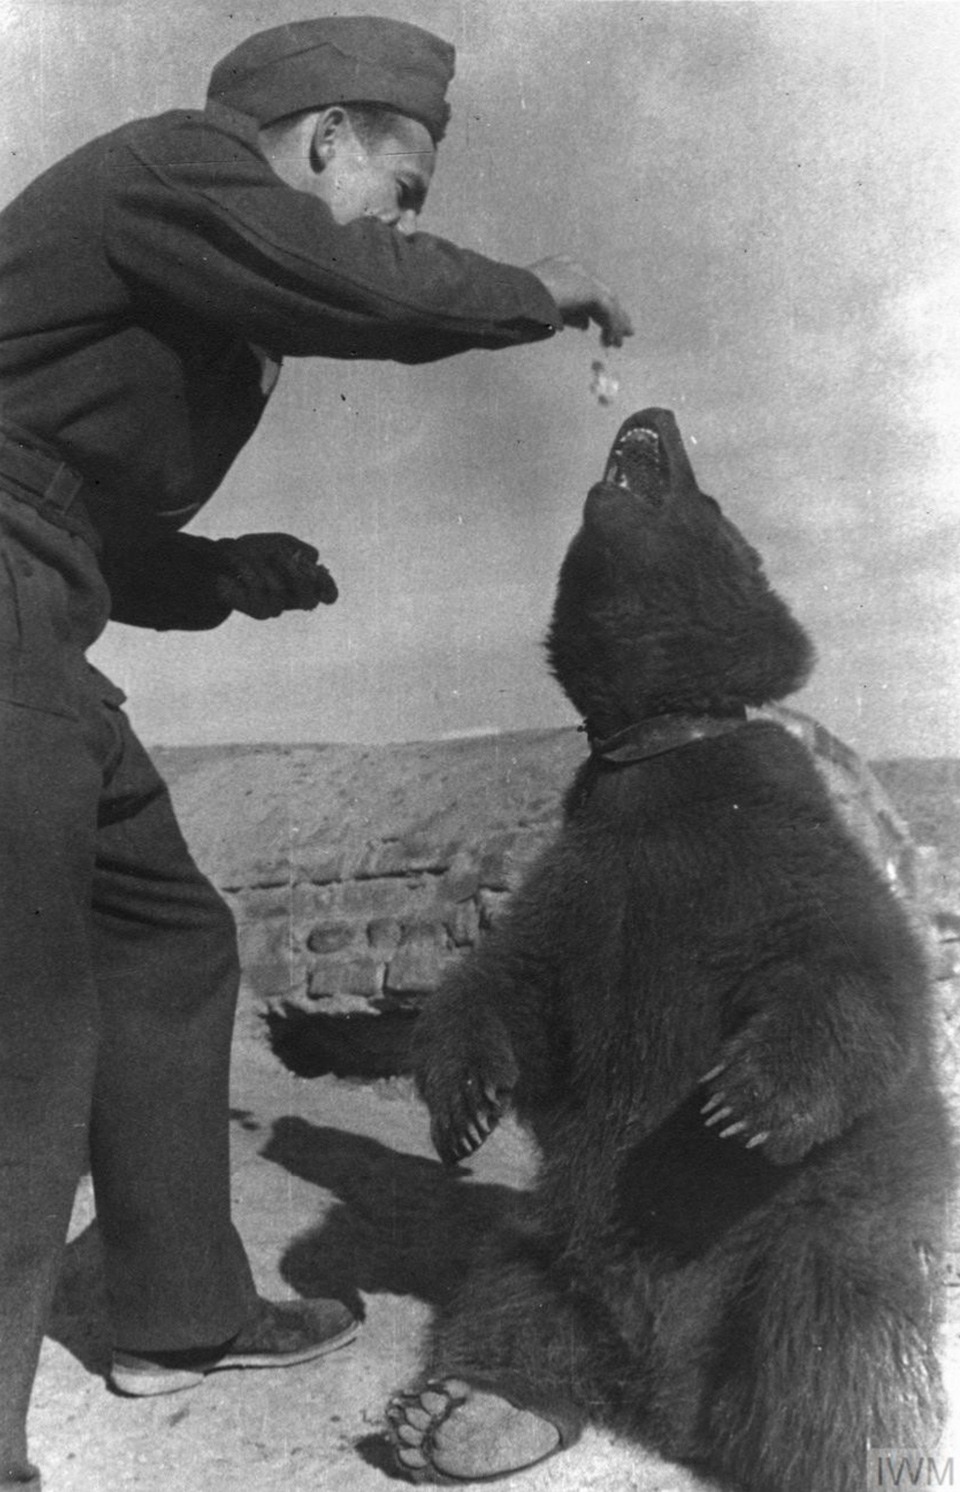 دخلك بتعرف قصة (فويتك)، الدب السوري الذي حارب النازيين